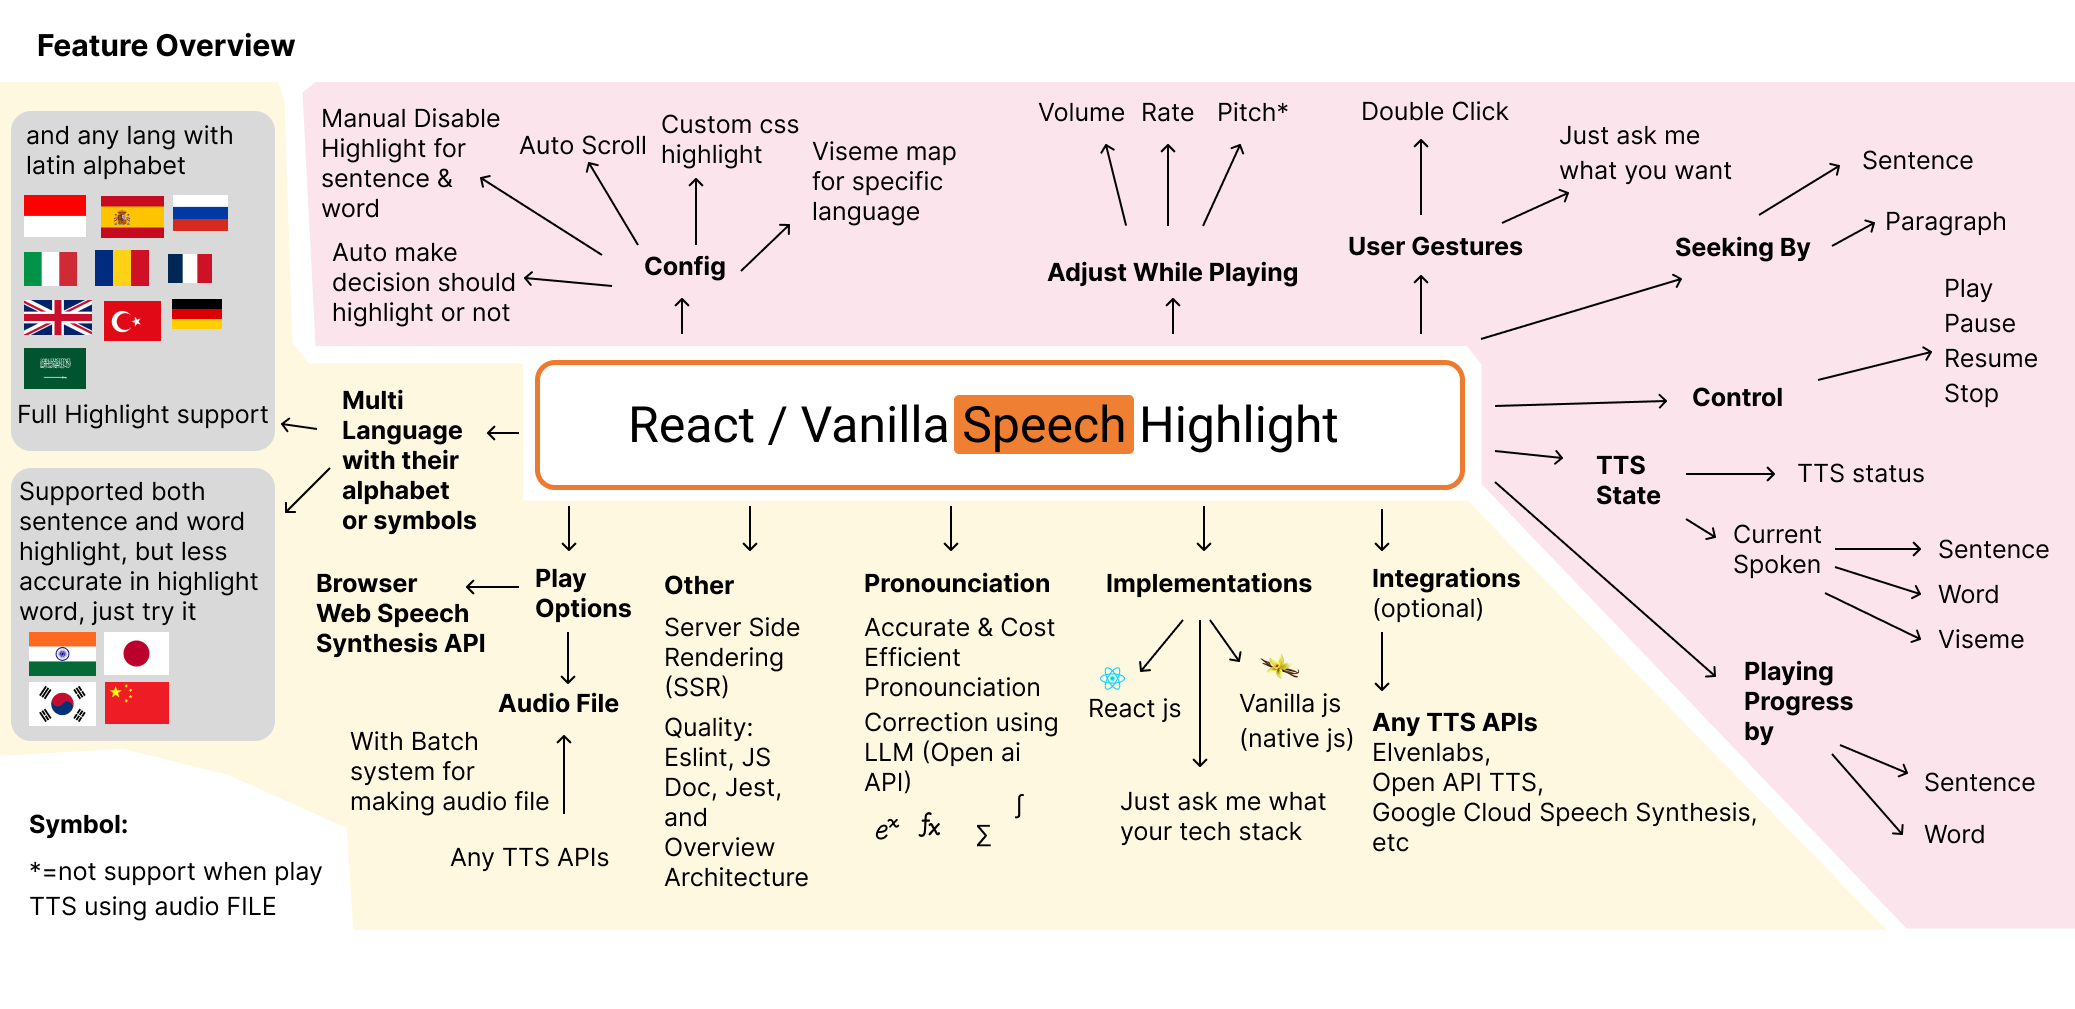 Feature overview of react speech highlight